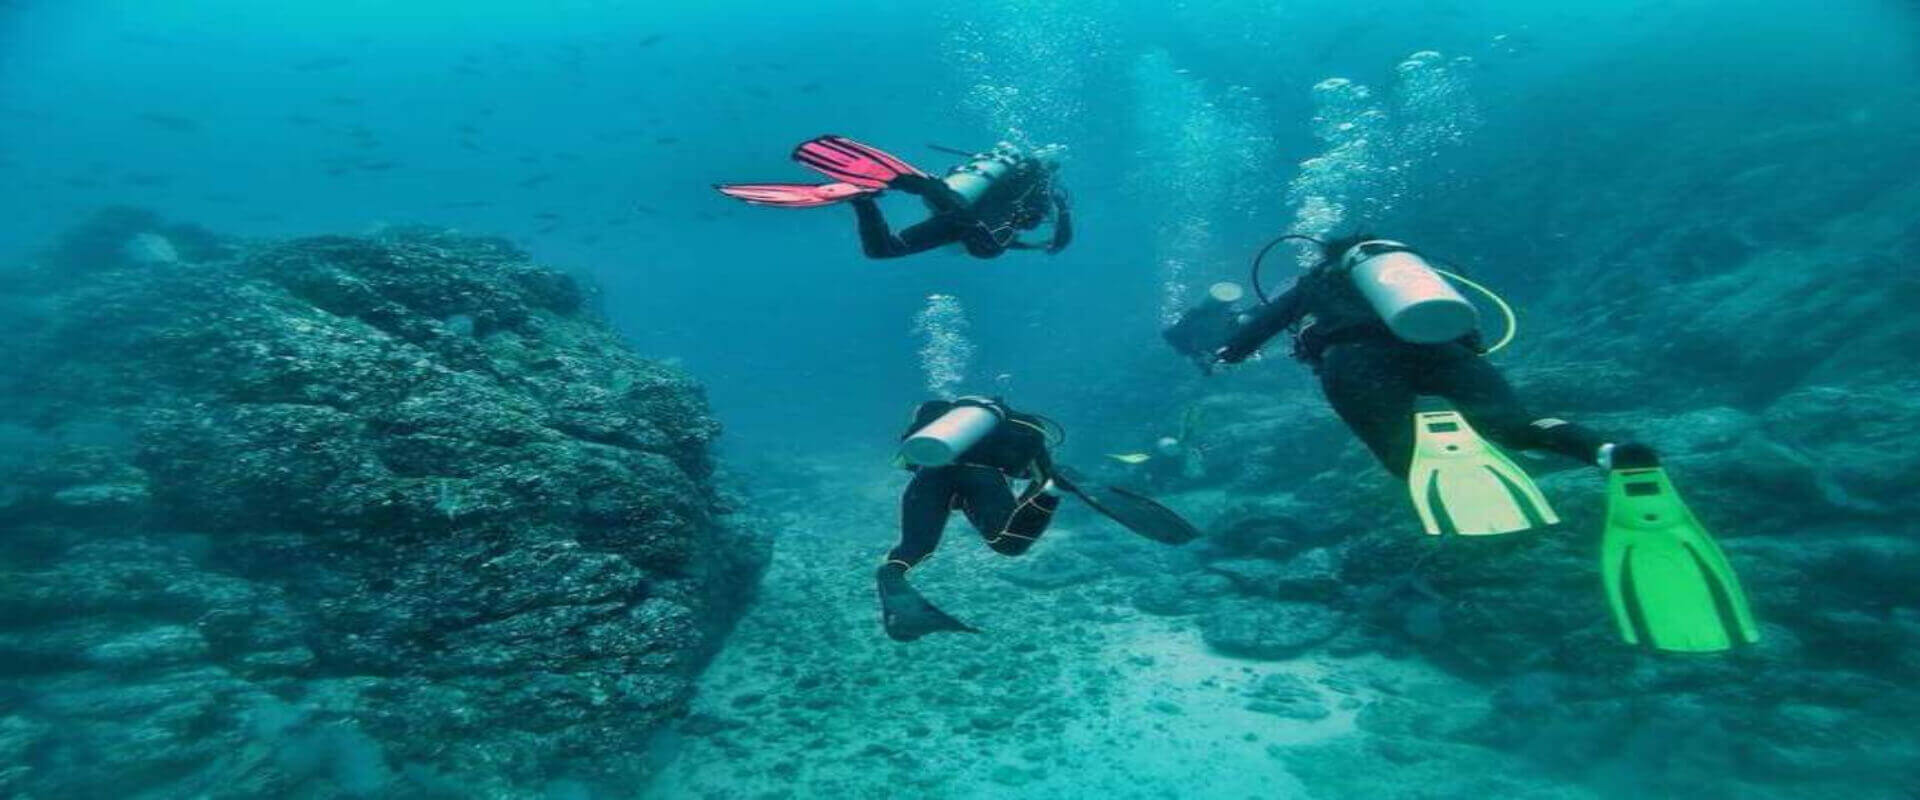 Catalina Islands Diving Tour | Costa Rica Jade Tours